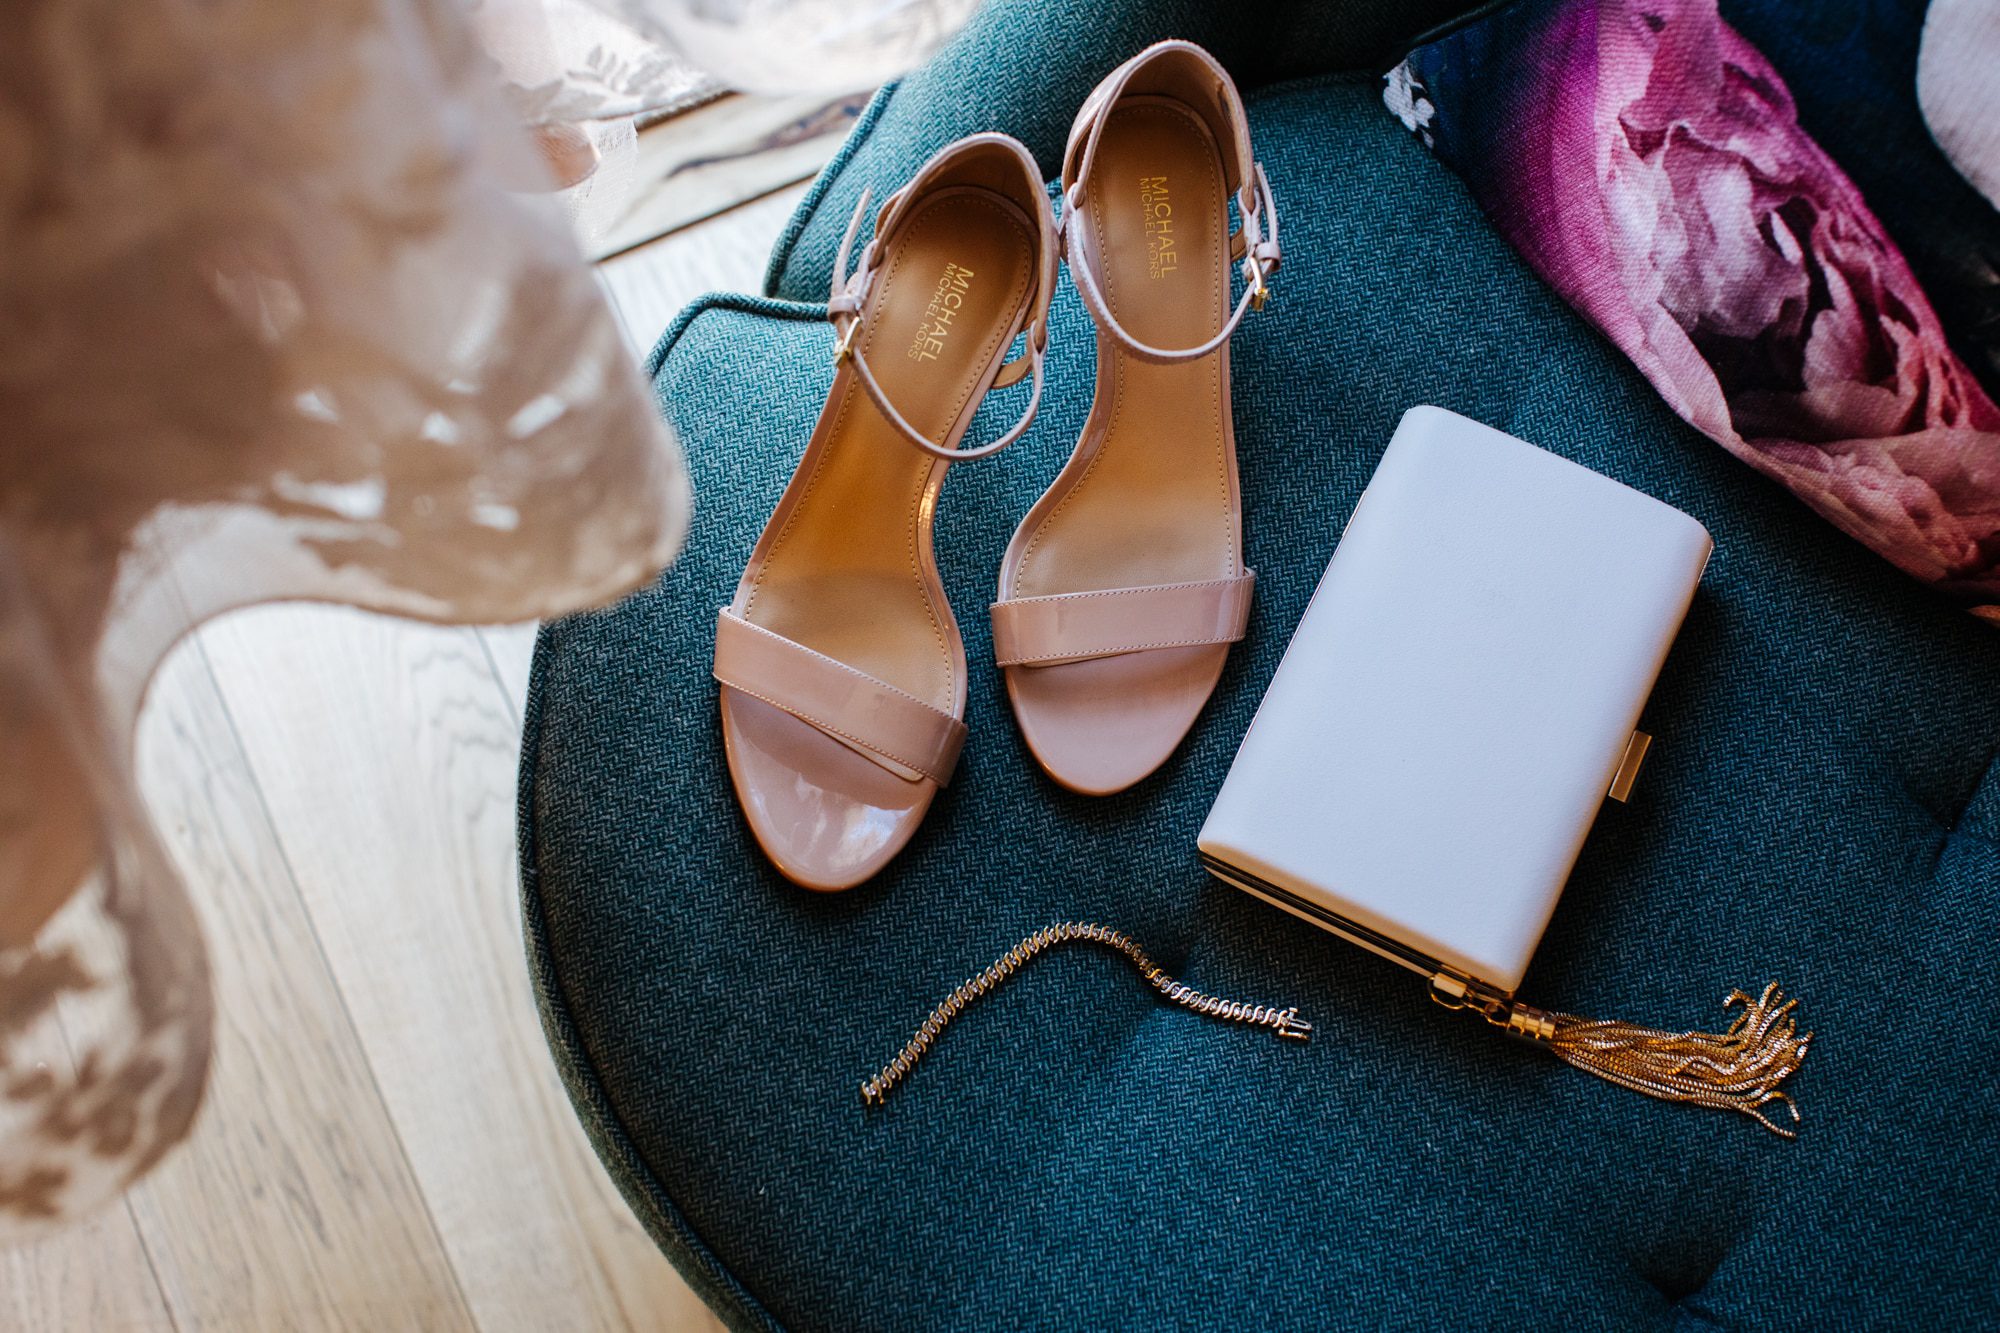 wedding details, bride details, bridal shoes, bridal accessories